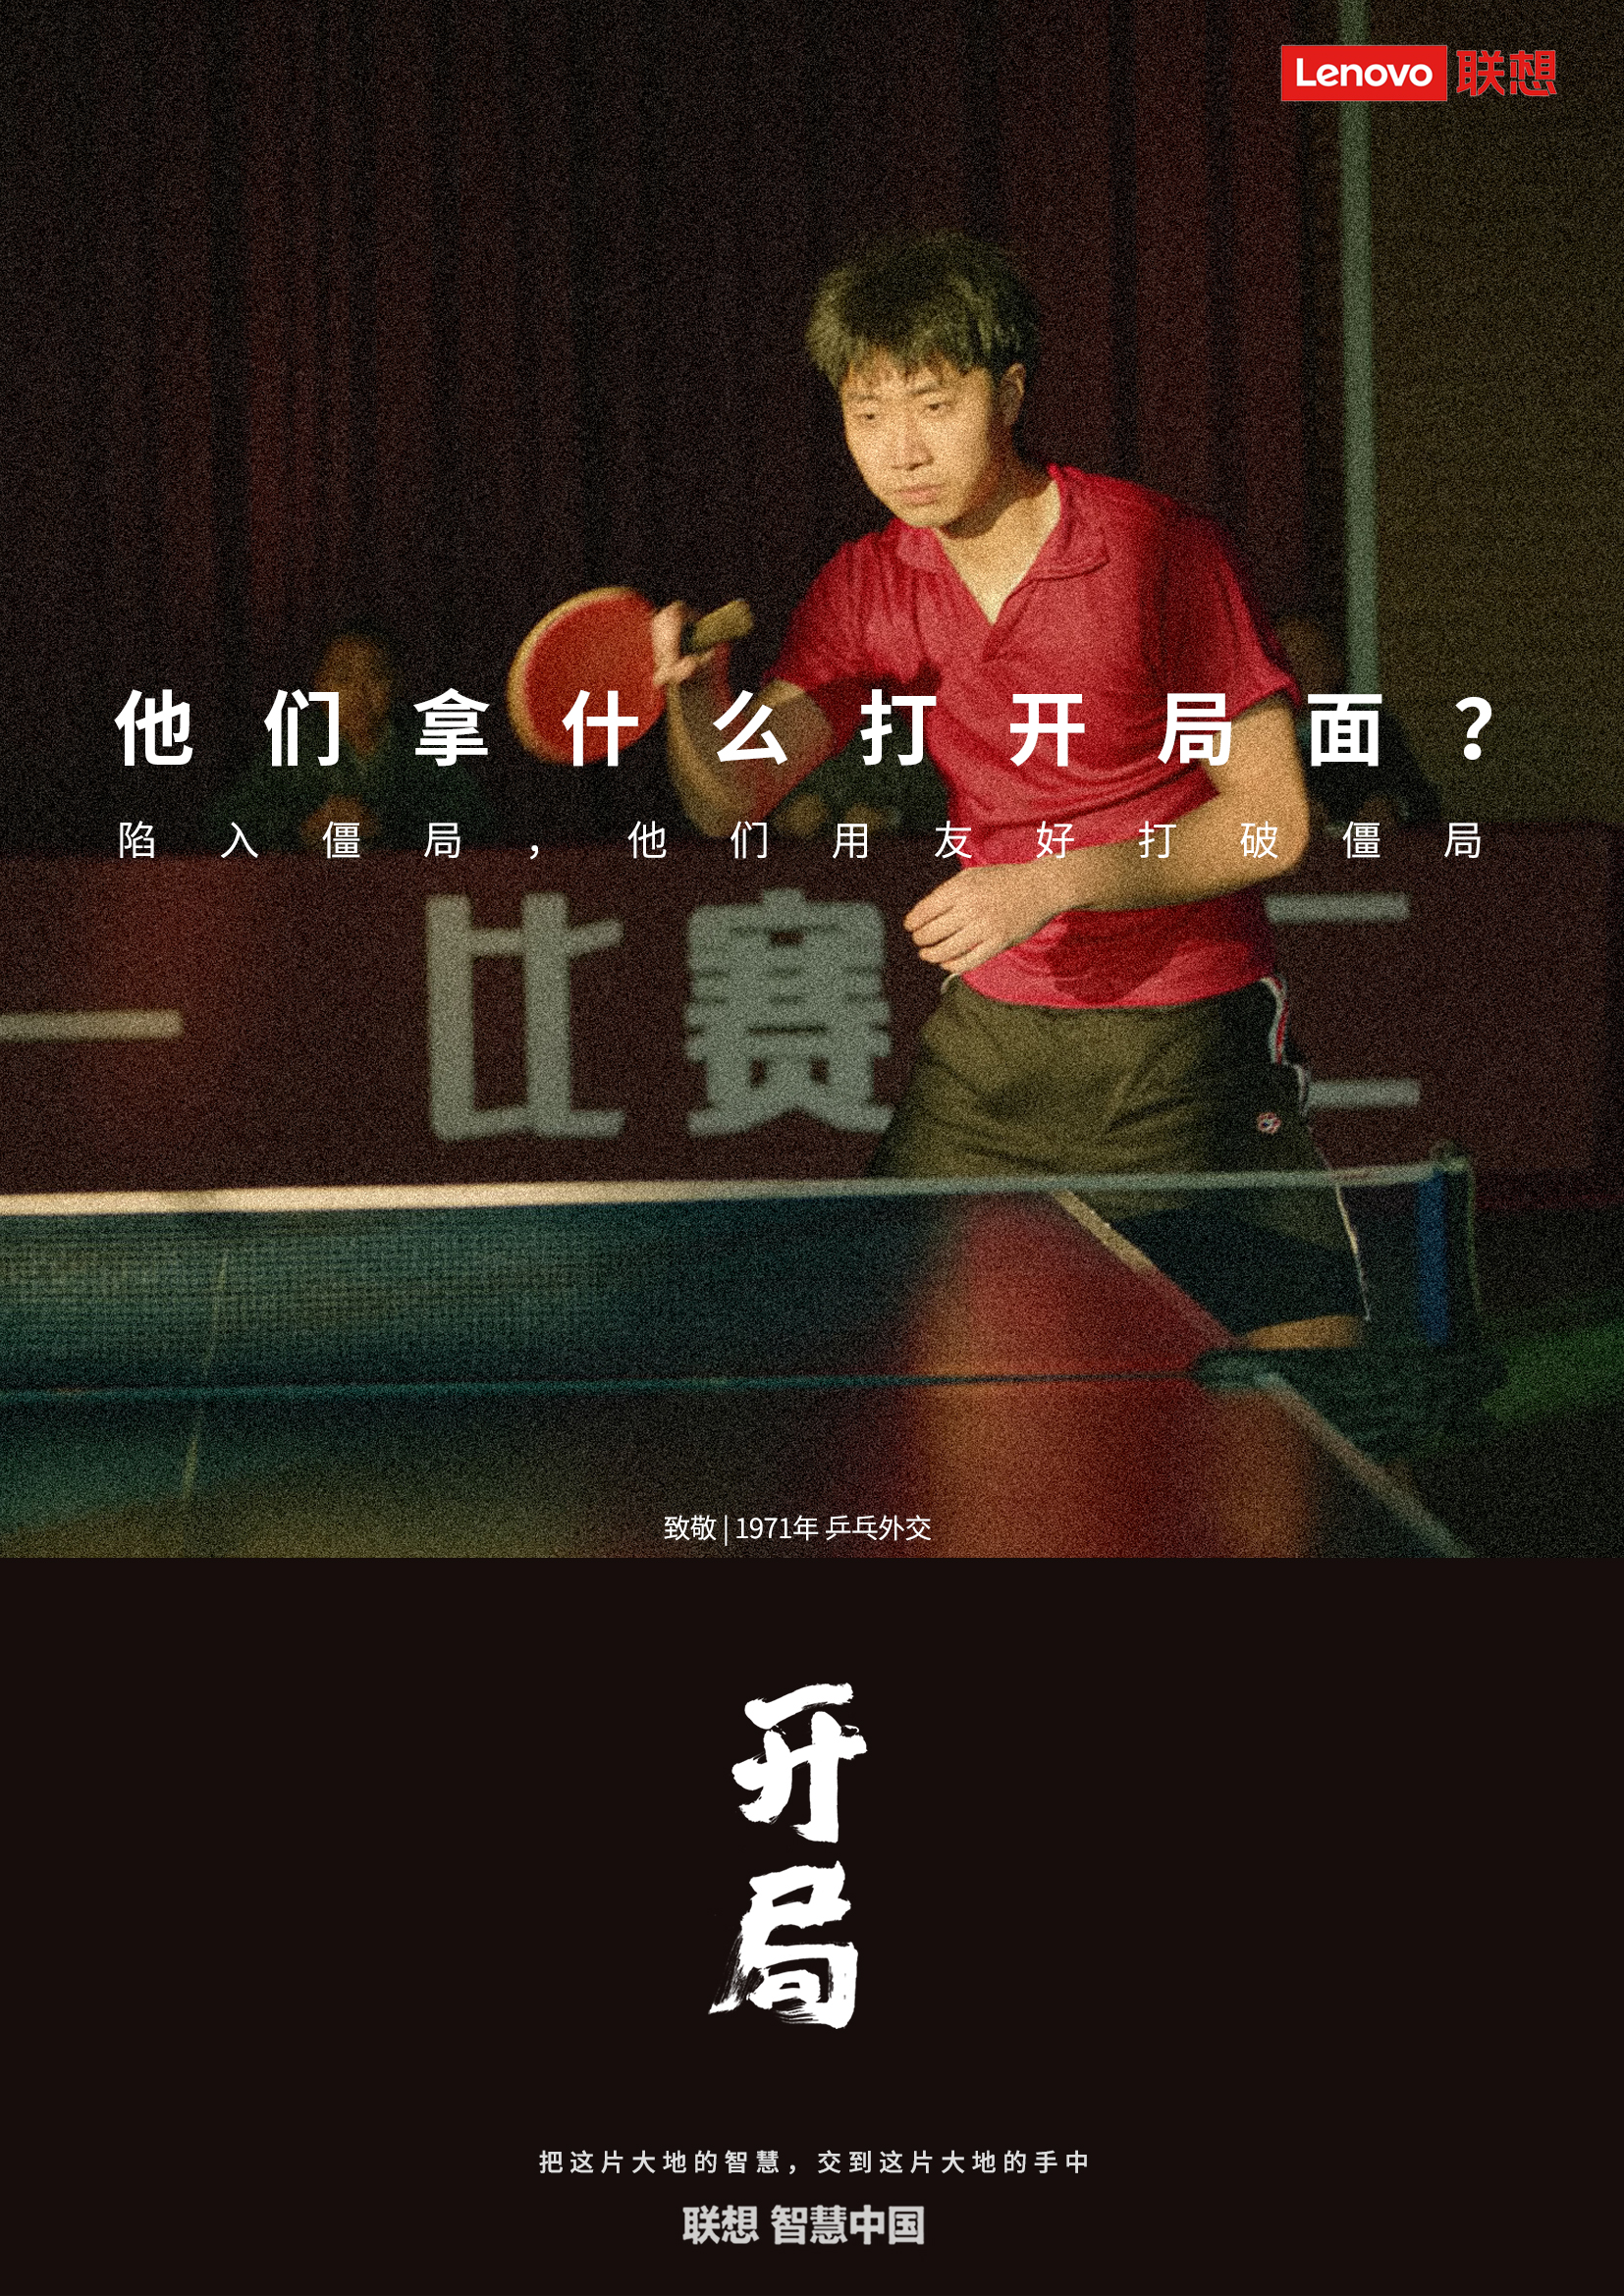 联想智慧中国品牌片《开局》：拿什么打开局面？